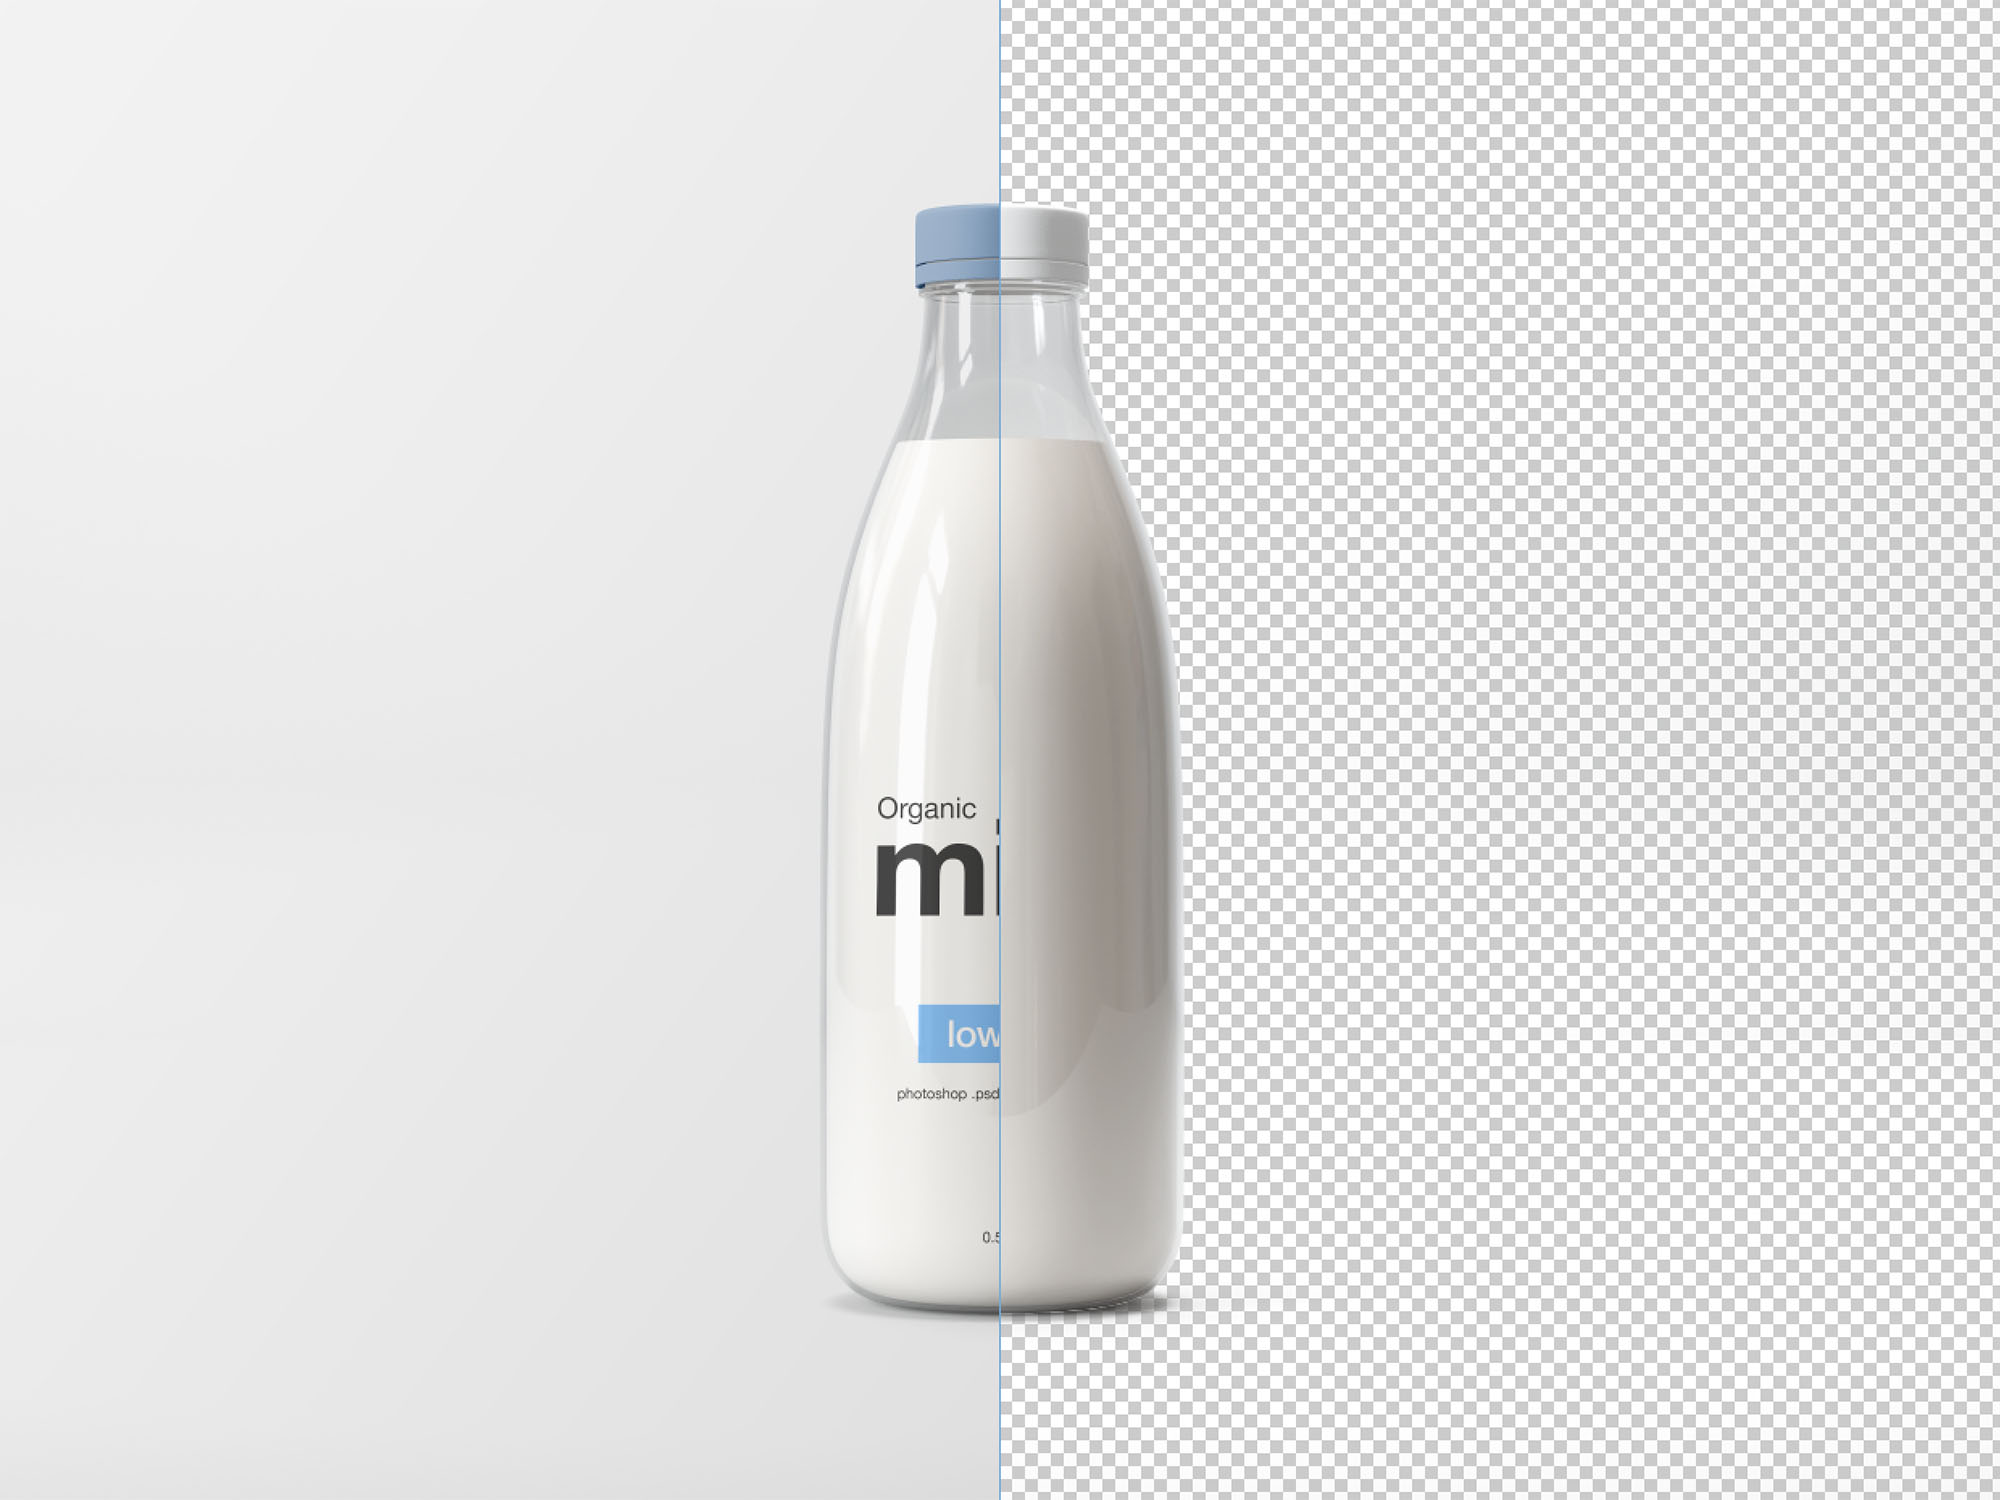 牛奶玻璃瓶包装设计贴图样机模版 Milk Glass Bot